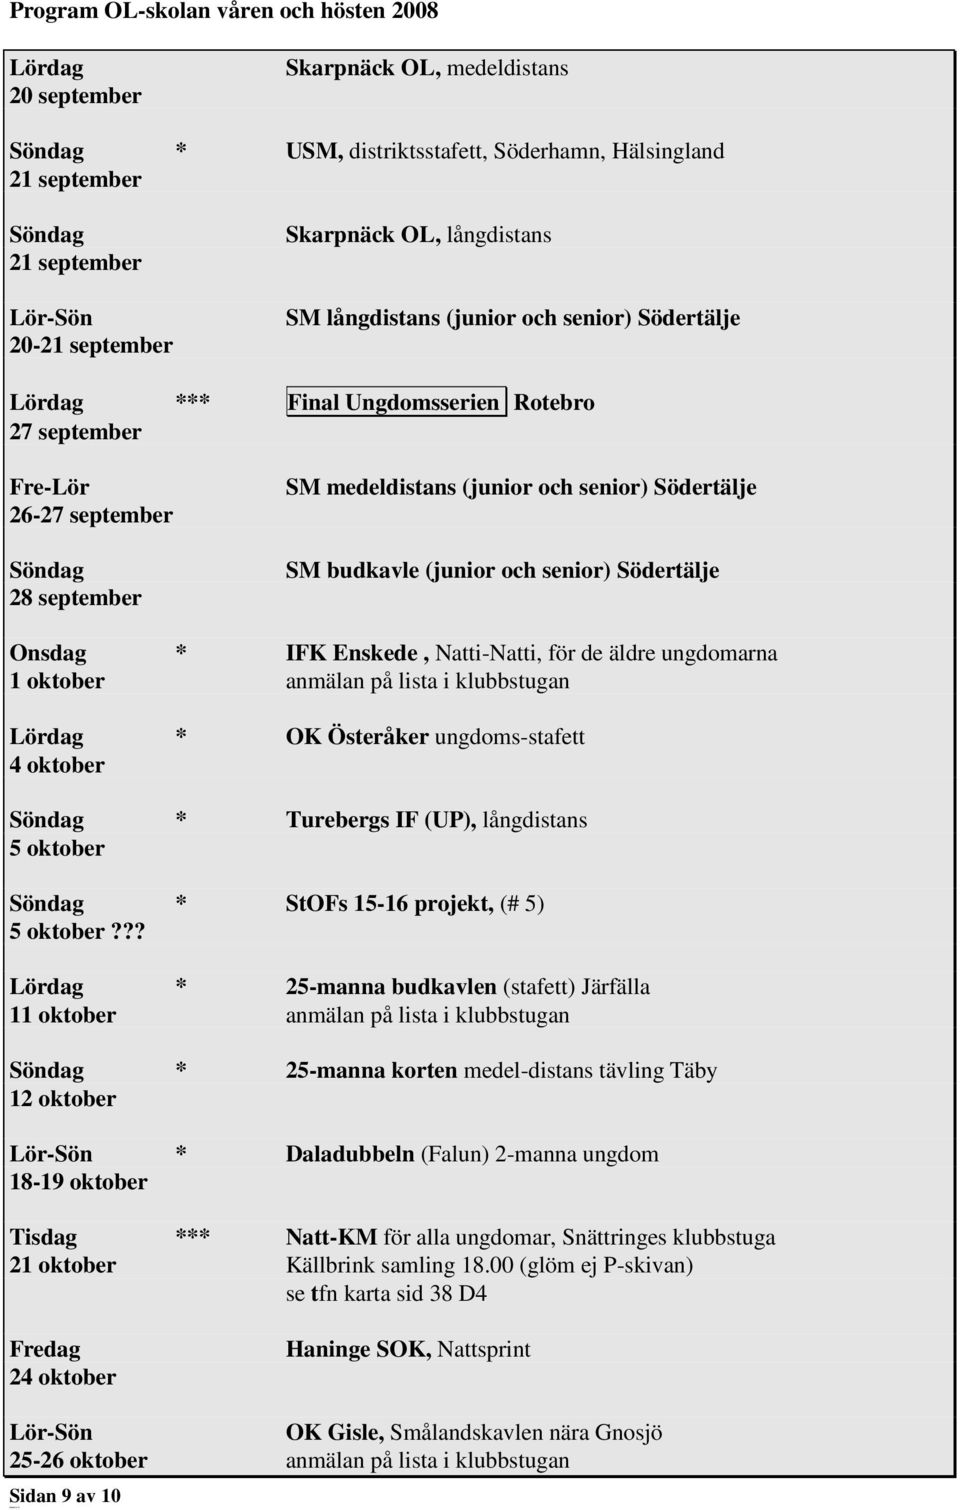 Onsdag * IFK Enskede, Natti-Natti, för de äldre ungdomarna 1 oktober anmälan på lista i klubbstugan Lördag * OK Österåker ungdoms-stafett 4 oktober * Turebergs IF (UP), långdistans 5 oktober * StOFs